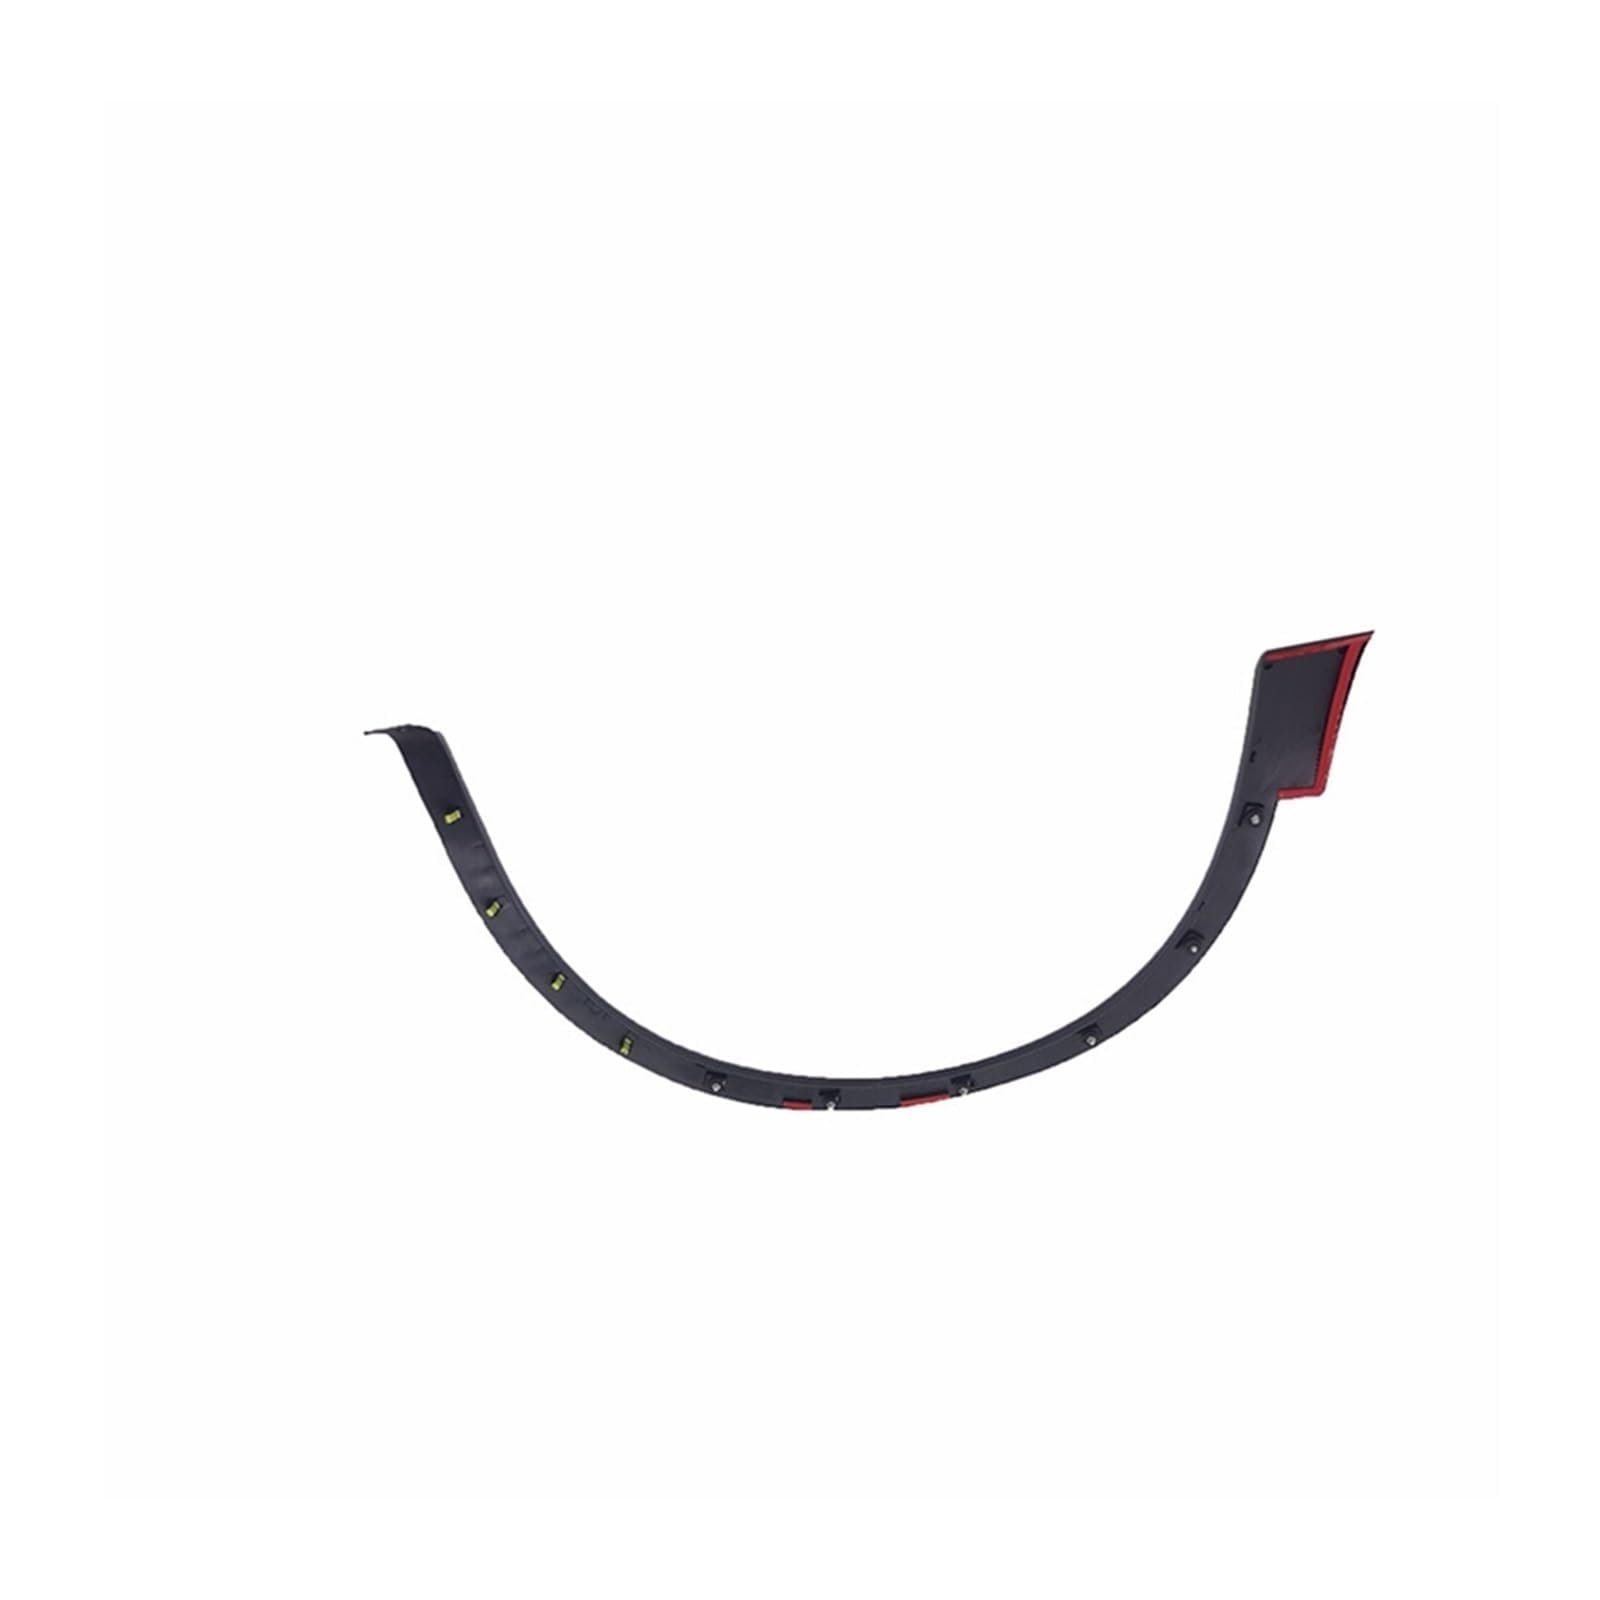 Radlaufschutz für Nissan Qashqai J11 Rouge Sport 2014-2018 2019 2020 2021,Universal Rad Augenbrauenschutz Lippenverkleidung Kratzfest Kotflügelverbreiterung,Front Right von zanmeini